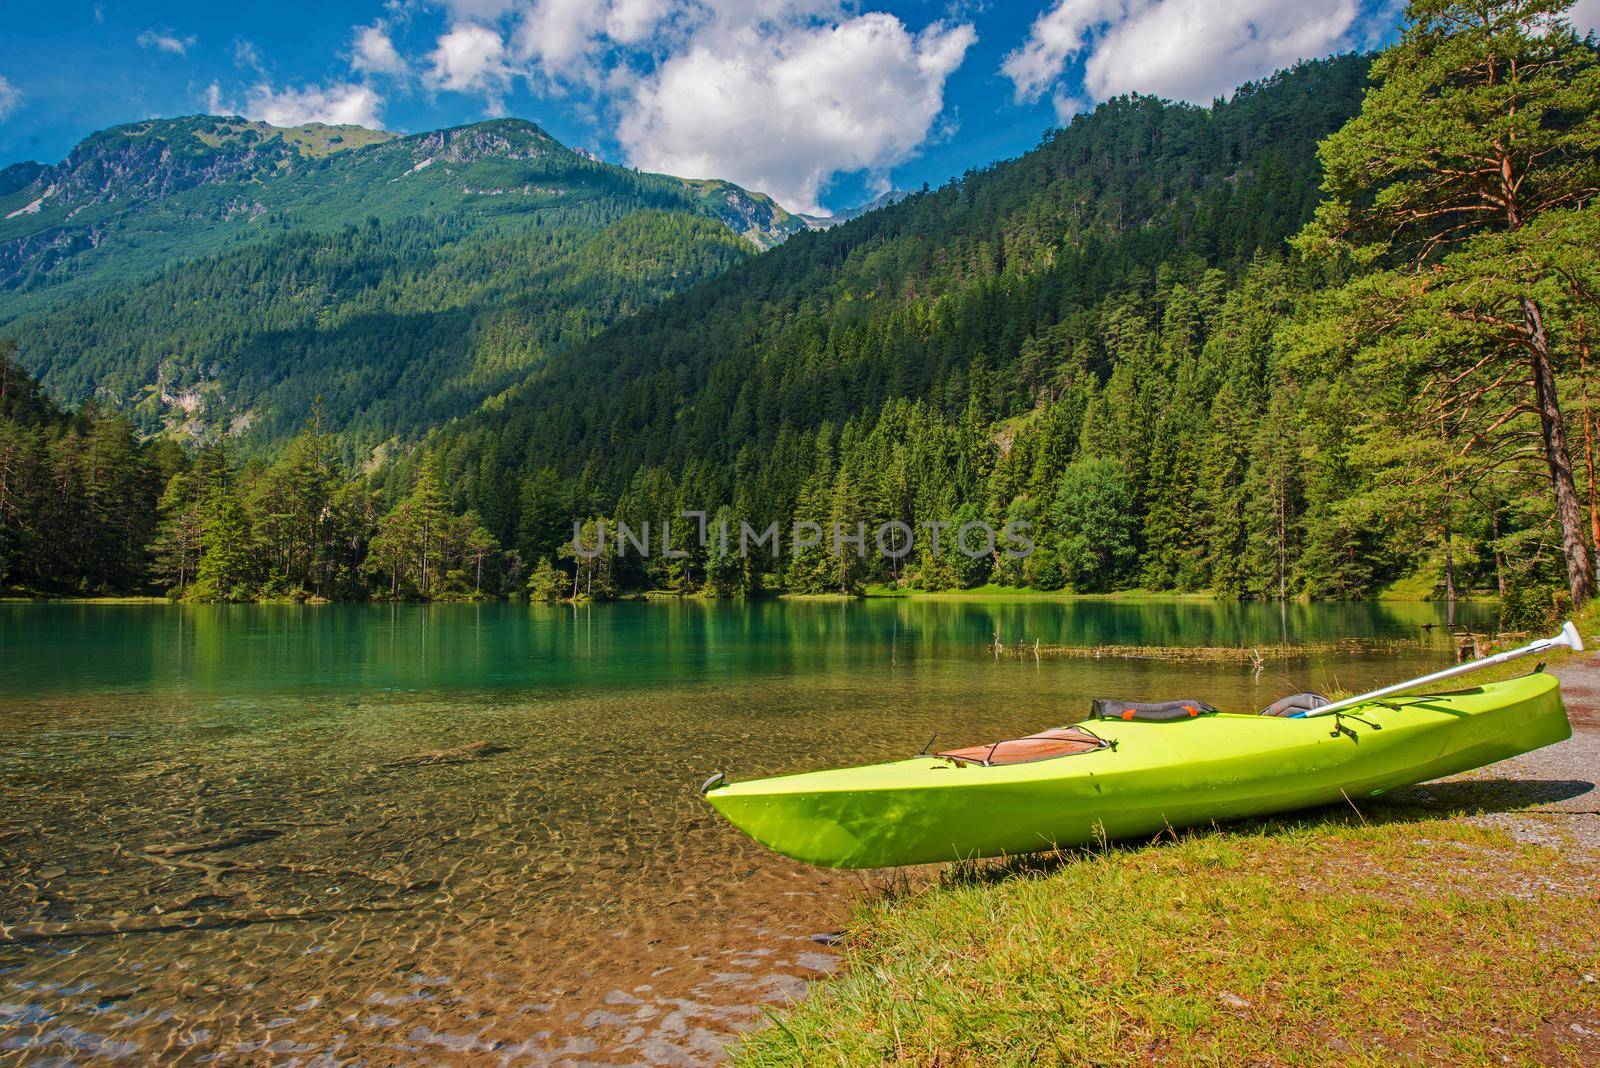 Scenic Bavarian Lake Kayaking During Summer Season. Turquoise Lake Water and Alpine Scenery.